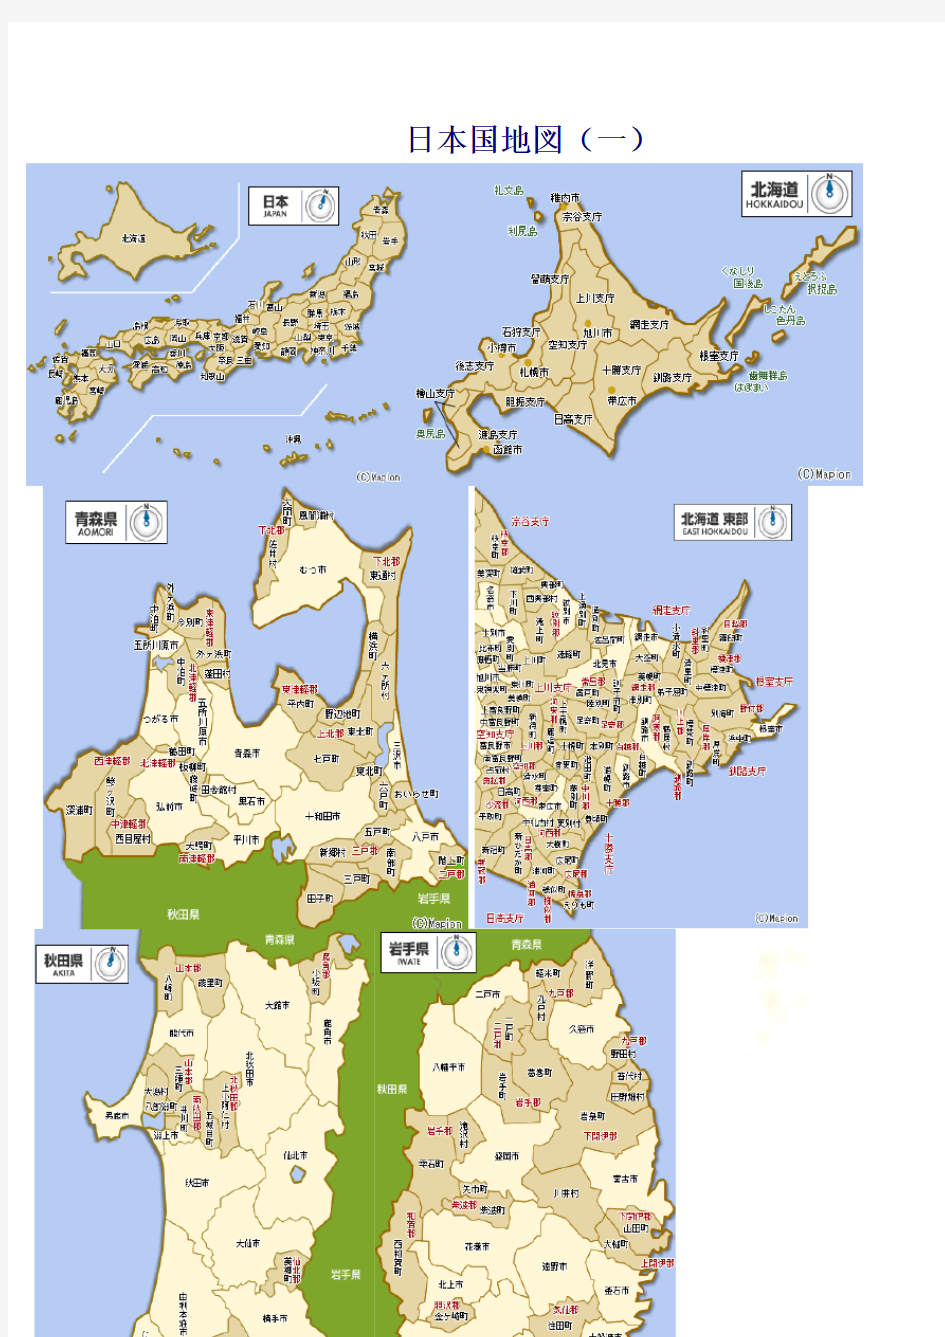 日本地图(清晰版)